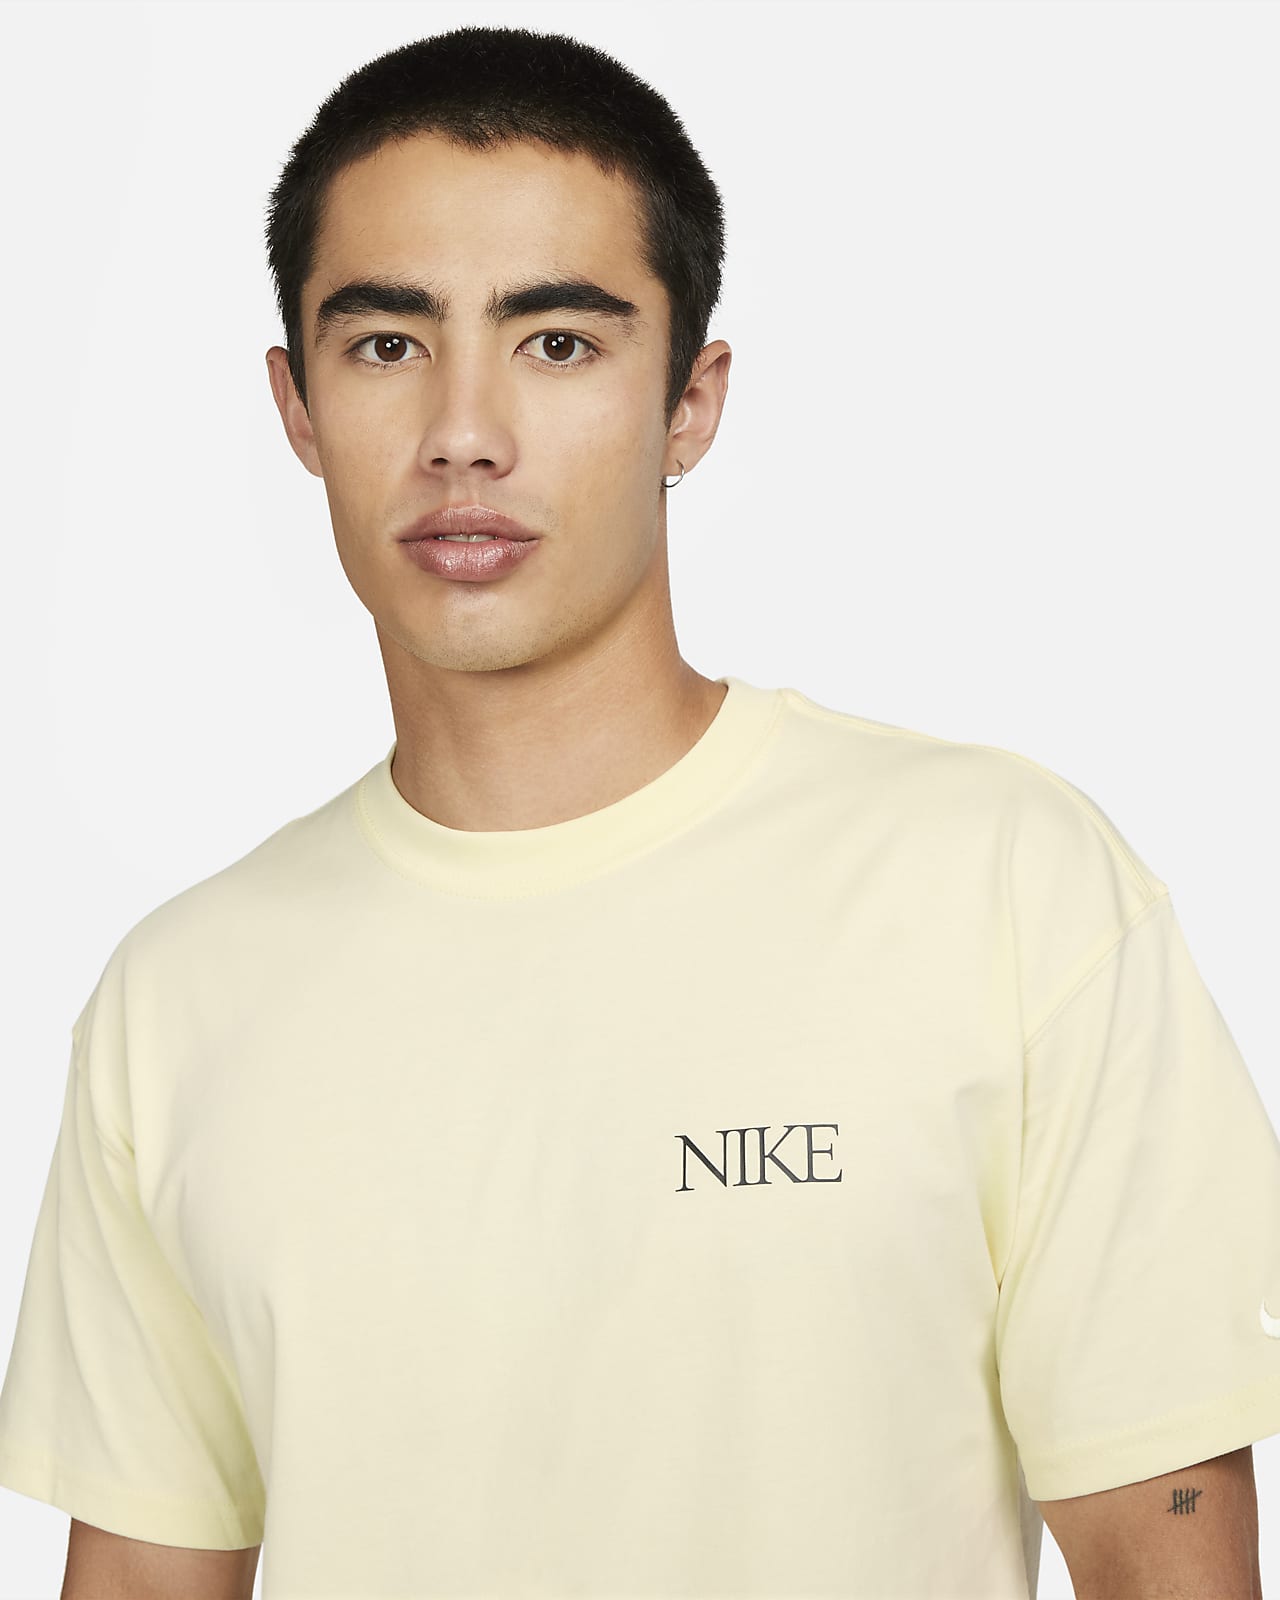 나이키 스포츠웨어 맥스90 남성 티셔츠. 나이키 코리아